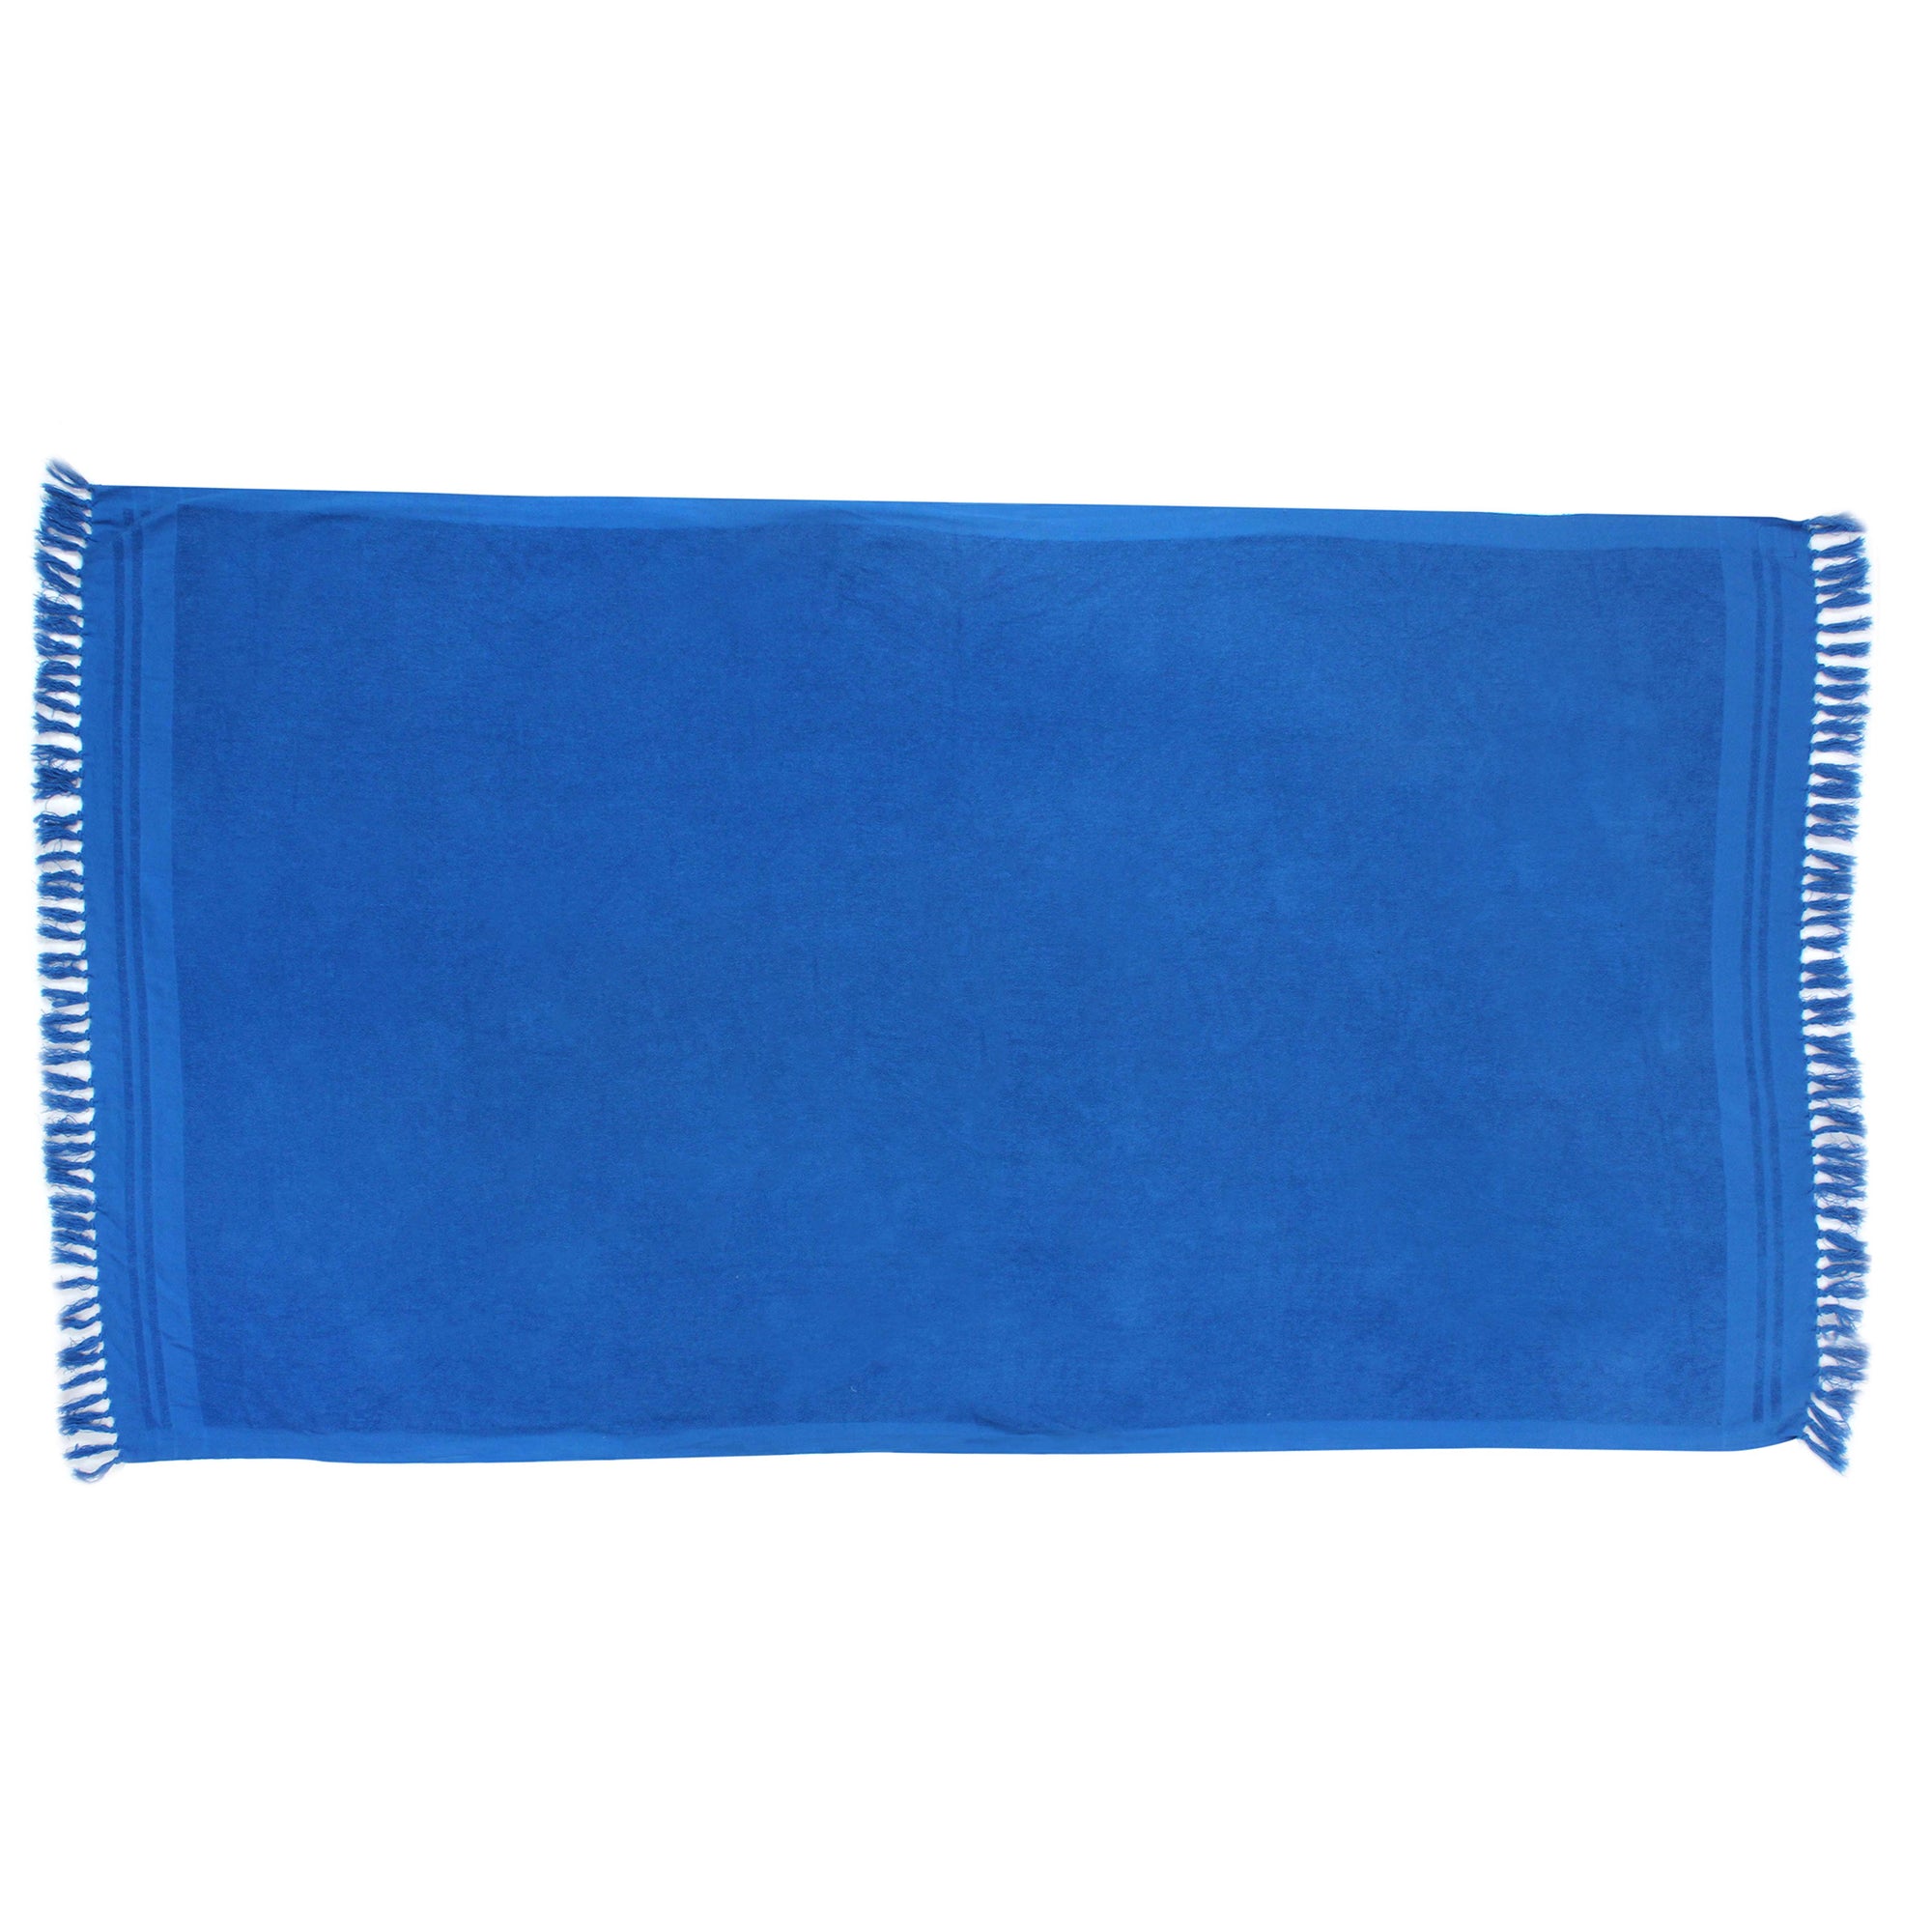 Blue Plain Beach Towel